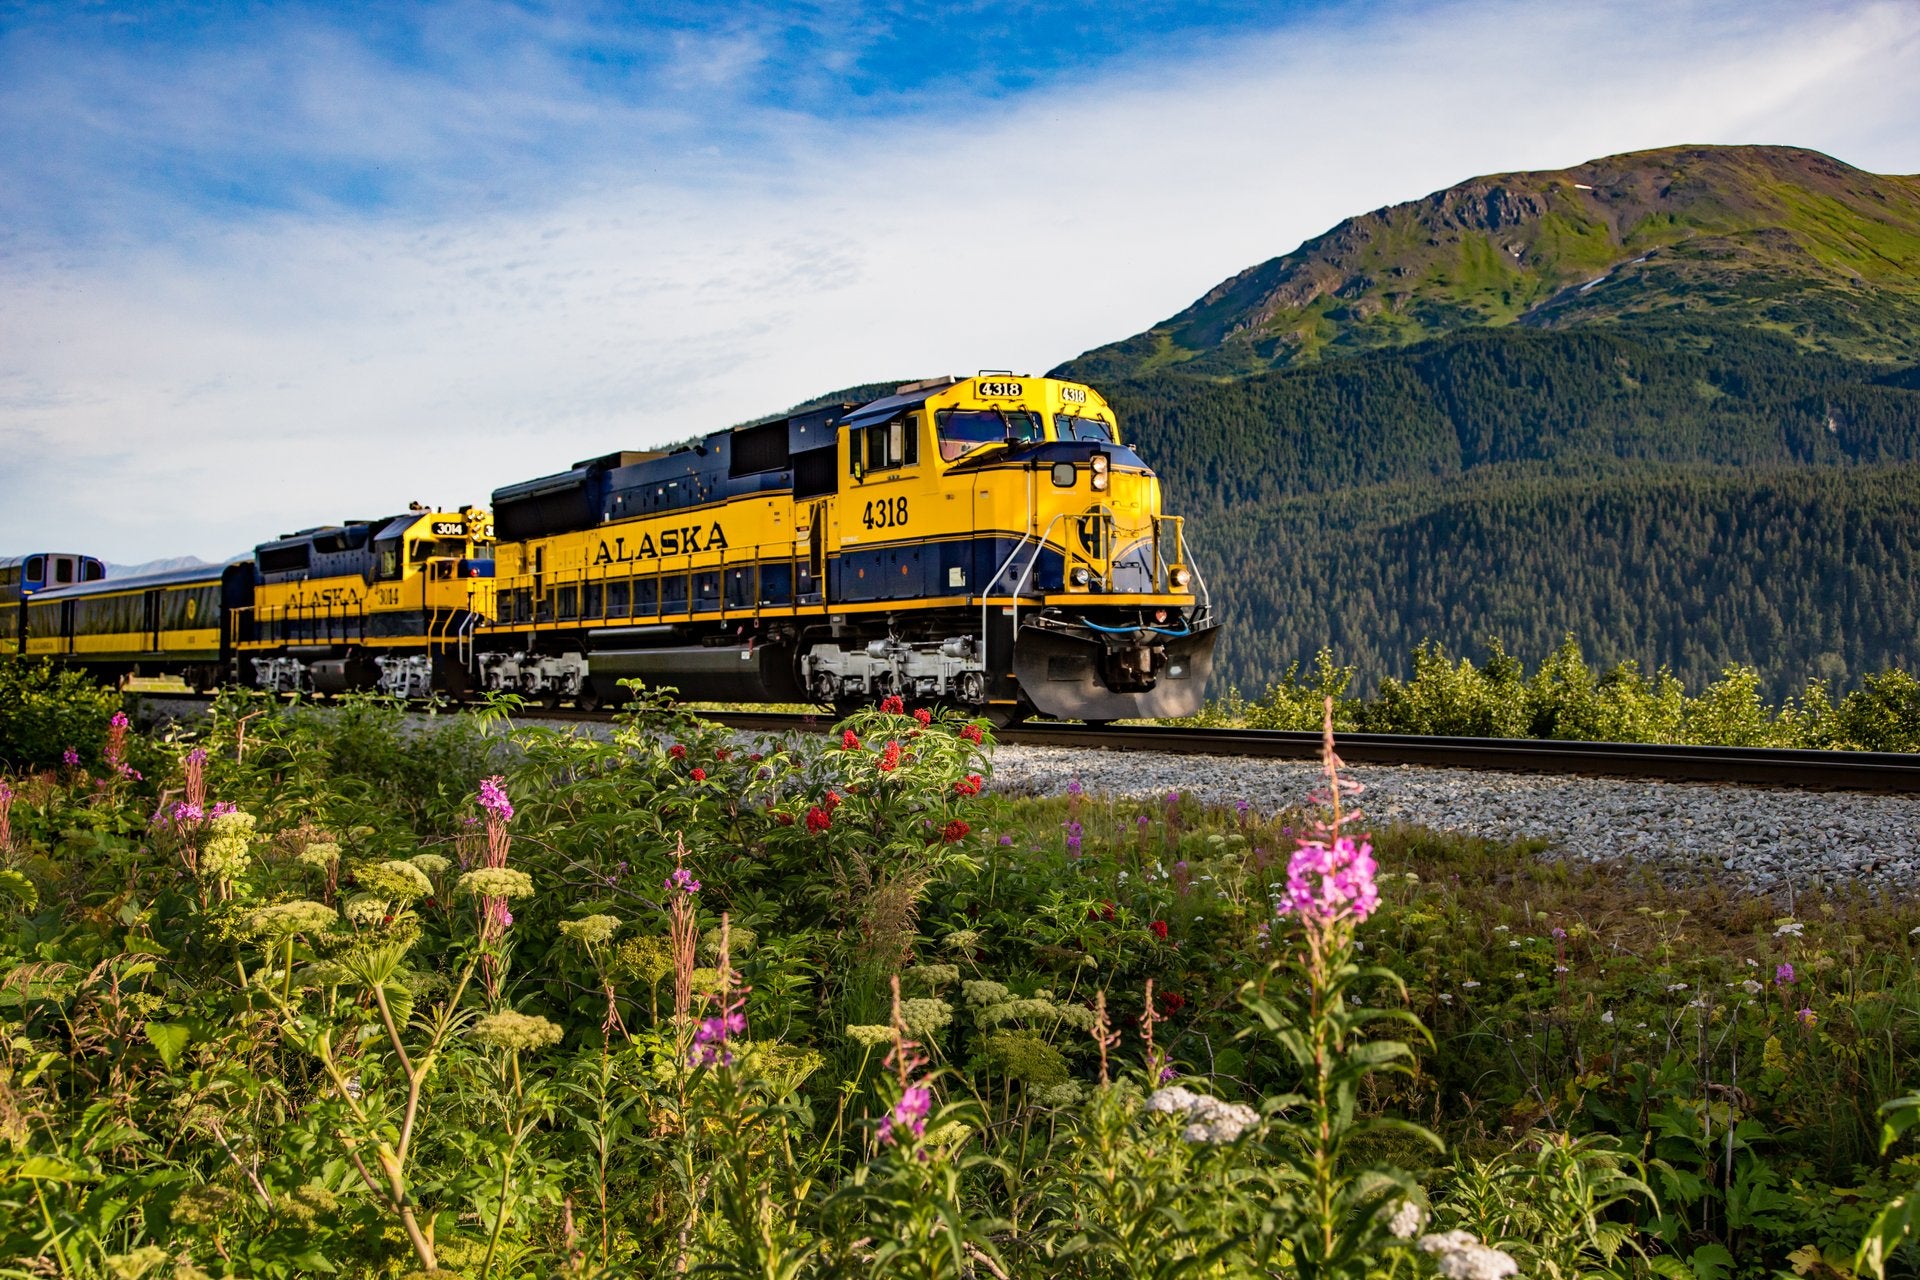 Alaska Railroad train in Alaska.